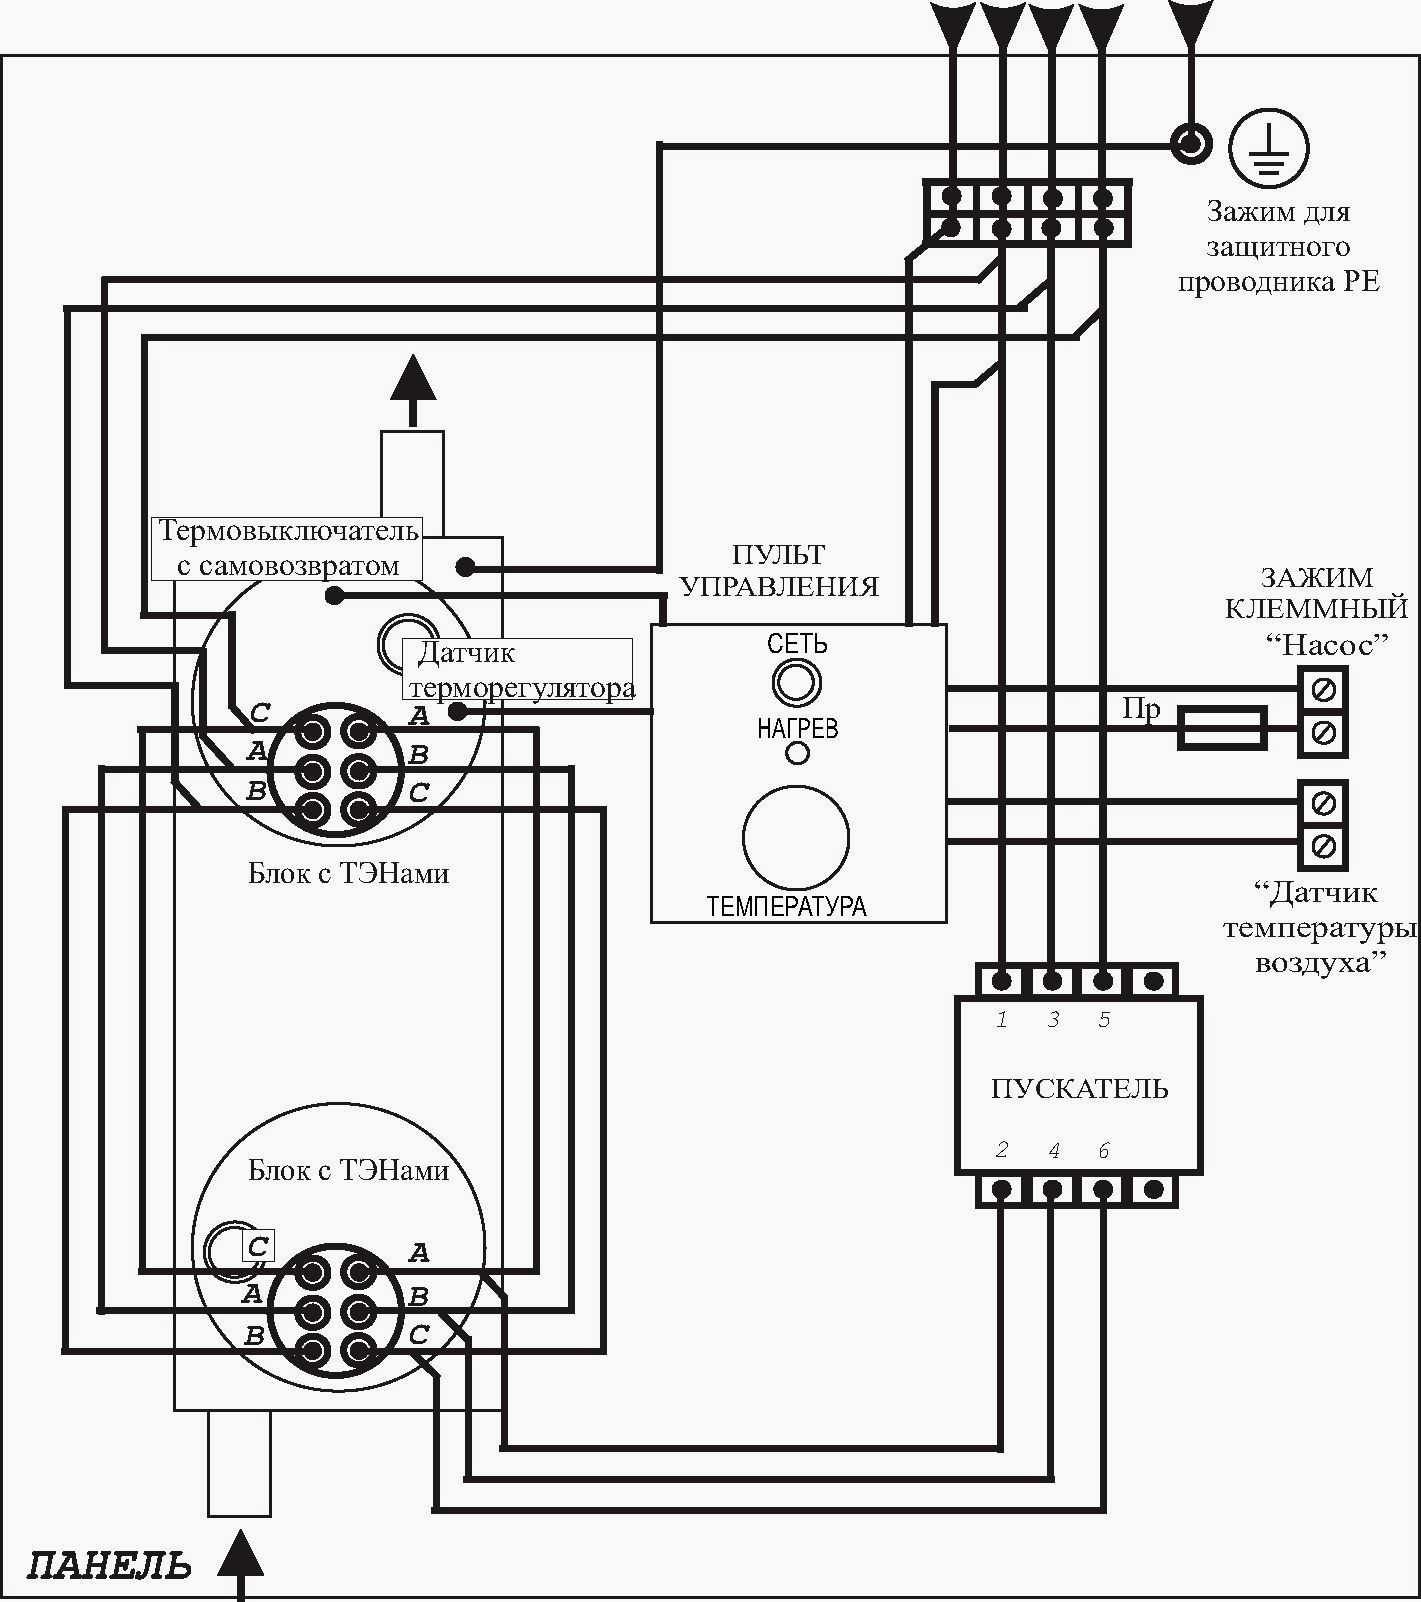 Автоматика электрокотла - 3 схемы для "чайников". как собрать и подключить.